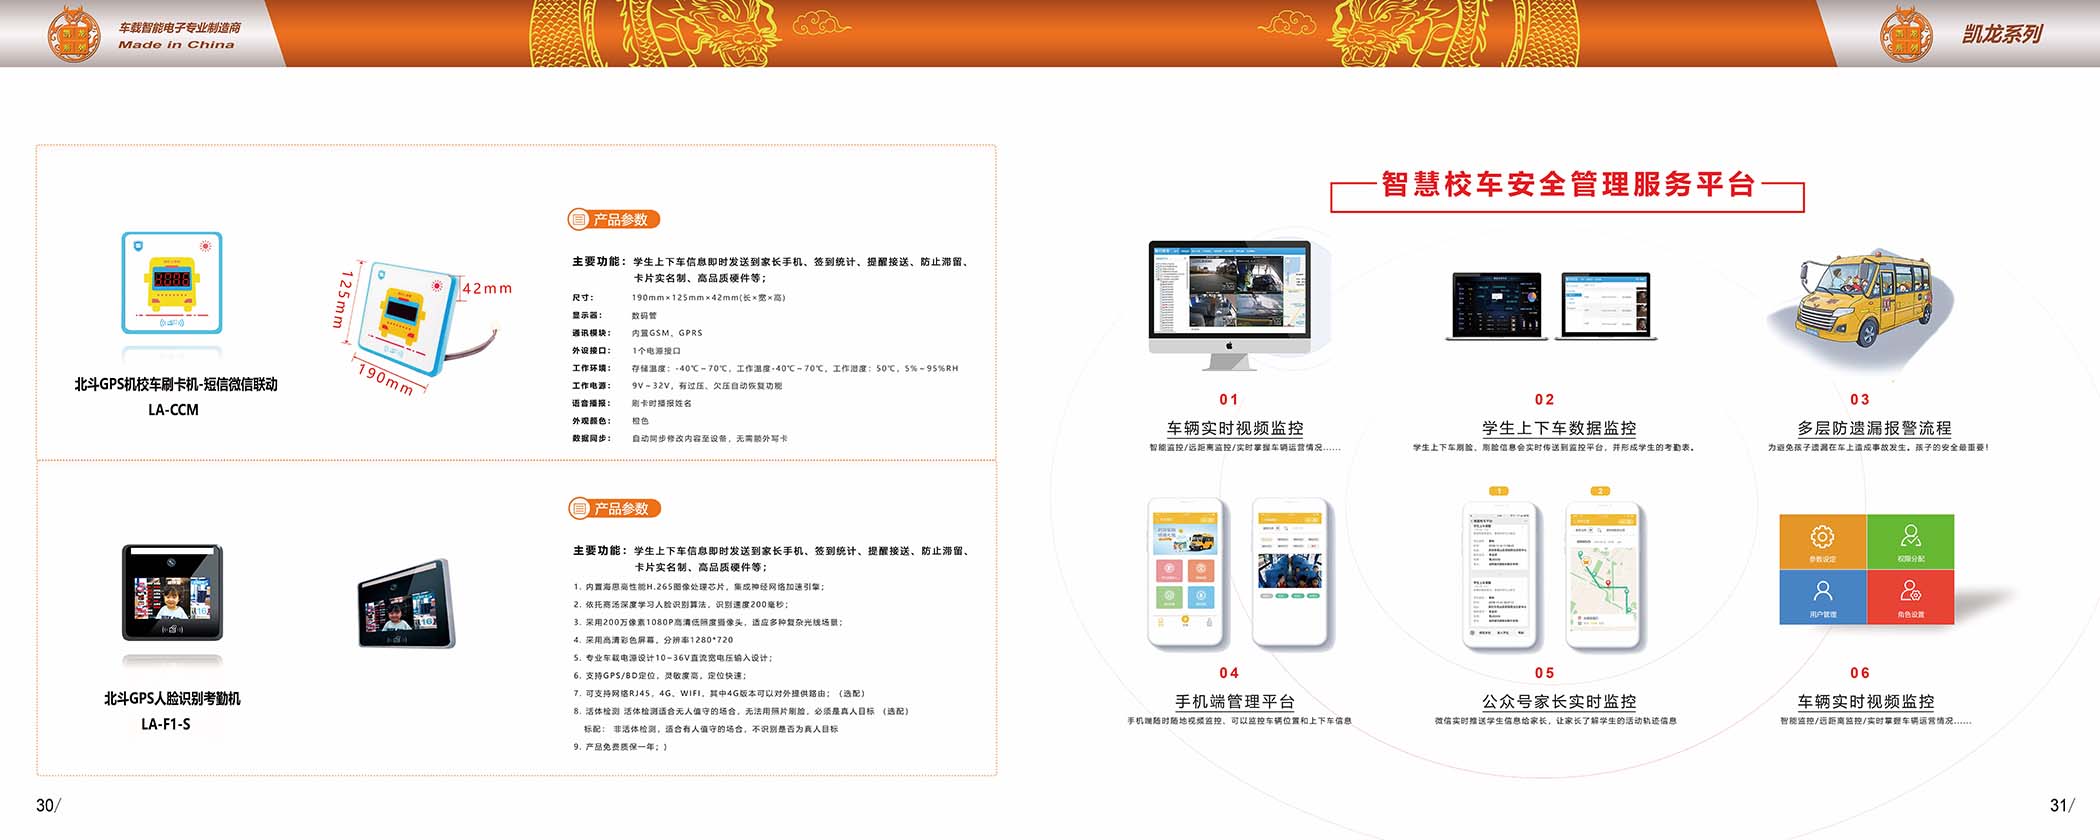 龙安天下电子-产品宣传画册(图12)